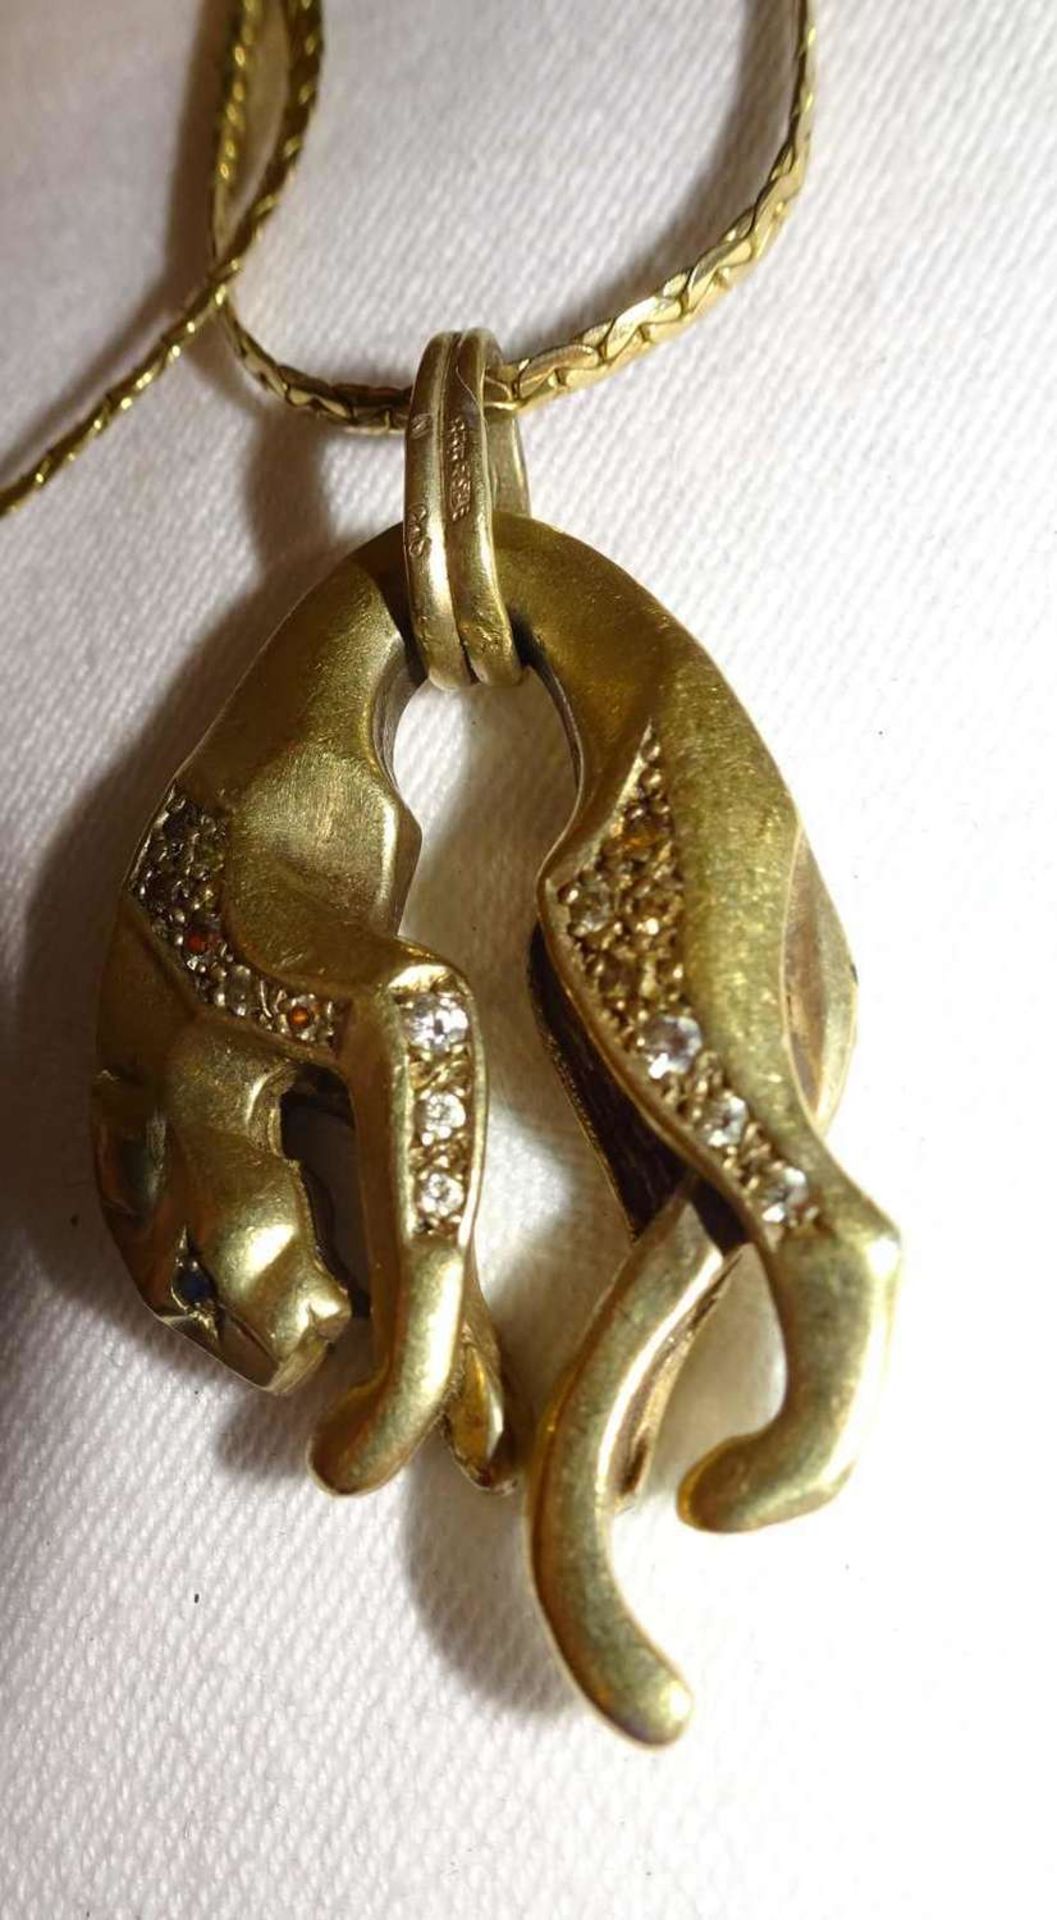 1 Kette mit Anhänger "Panther", Silber vergoldet. Kettenlänge ca. 78 cm. 1 chain with pendant " - Bild 2 aus 2